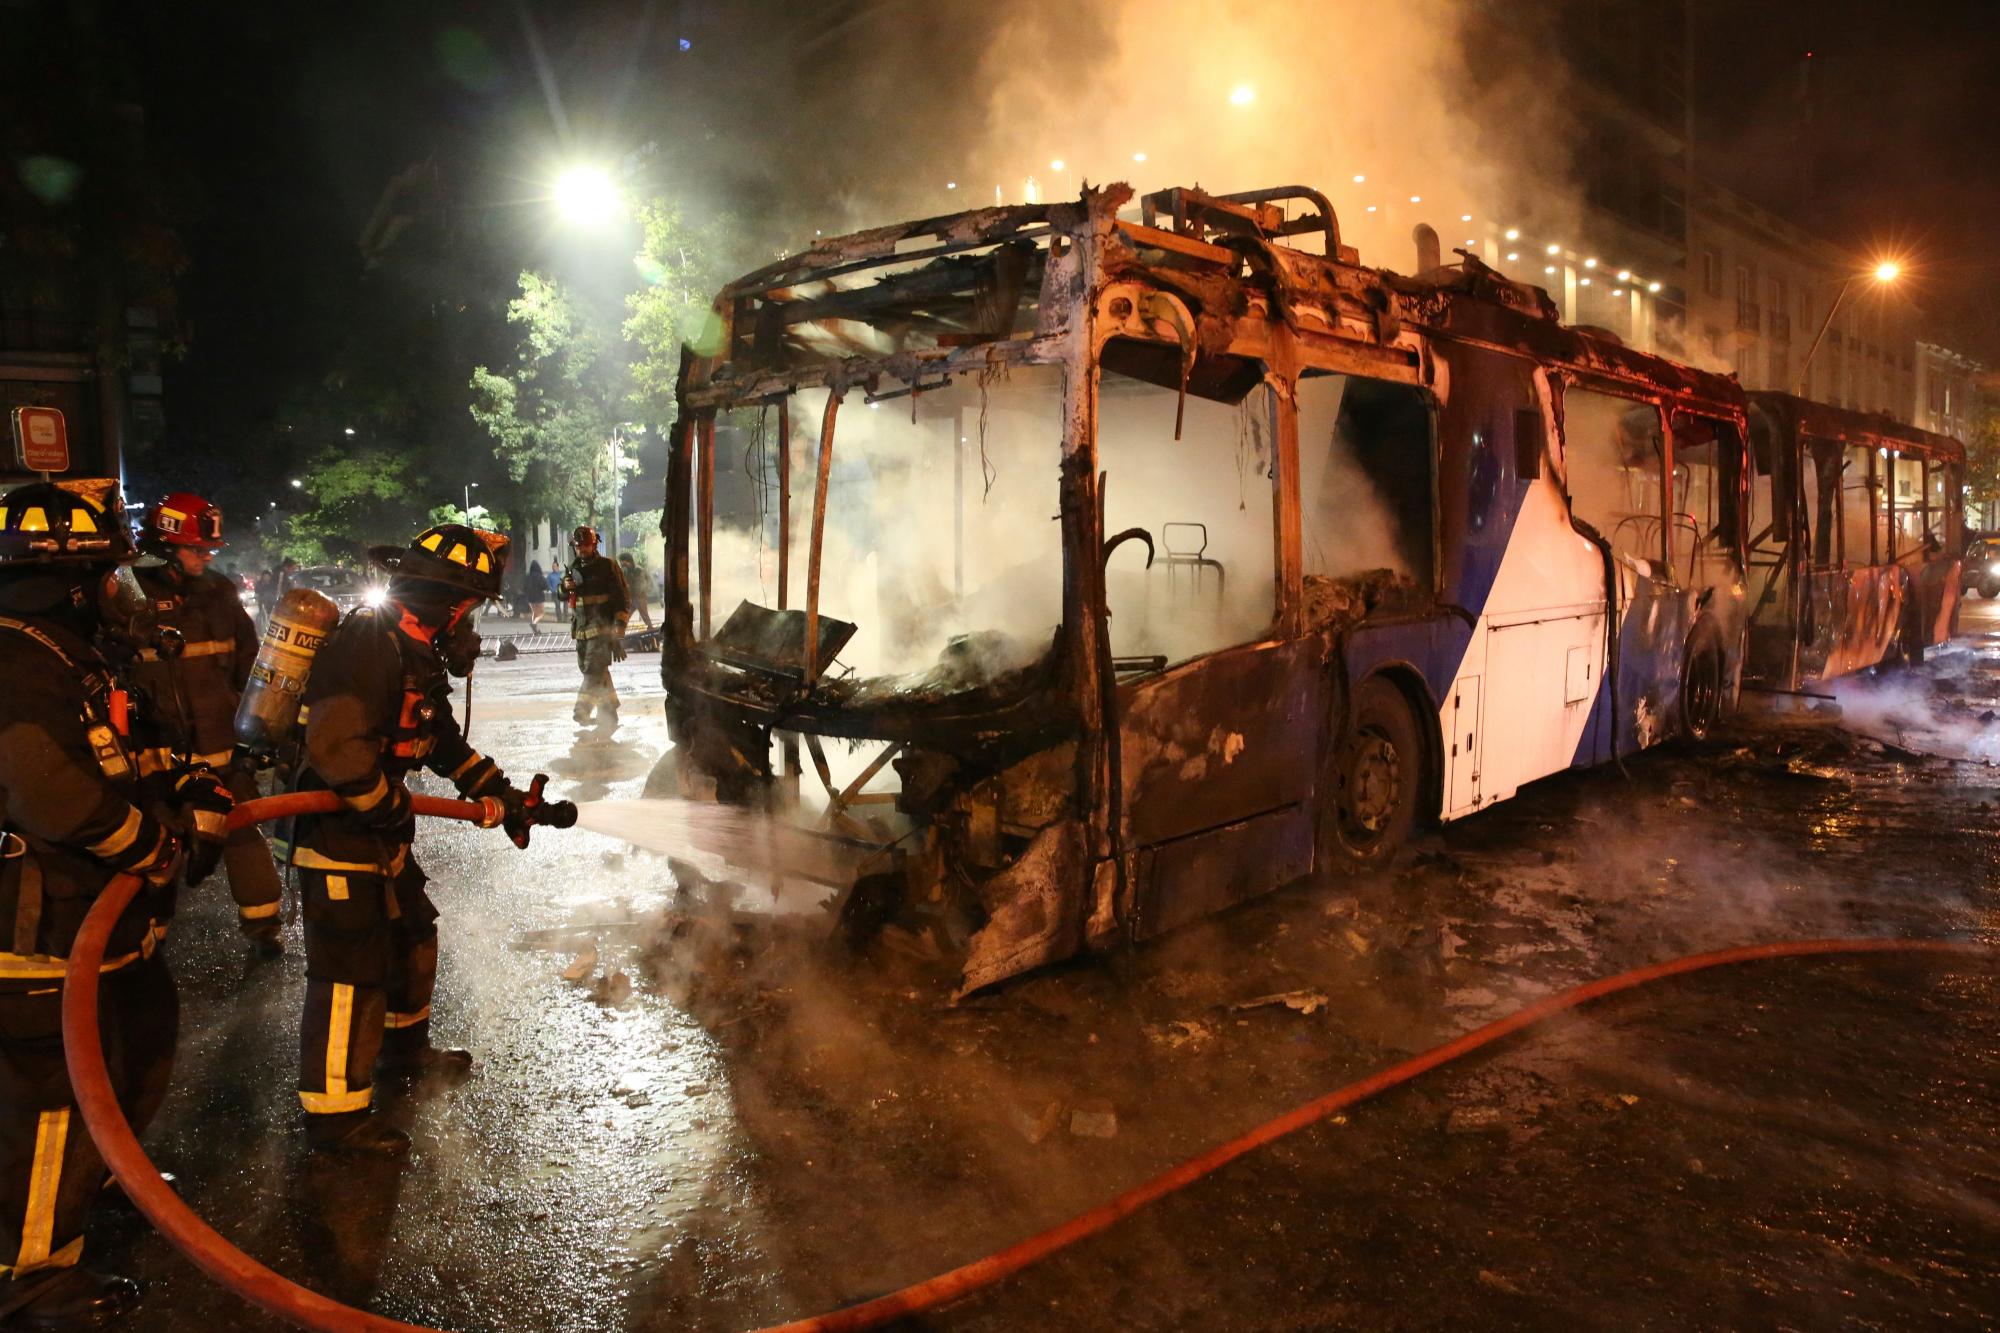 Los bomberos apagaron las llamas de un autobús en llamas durante una protesta contra el aumento del costo de las tarifas de metro y autobús, en Santiago, el viernes 18 de octubre de 2019. 